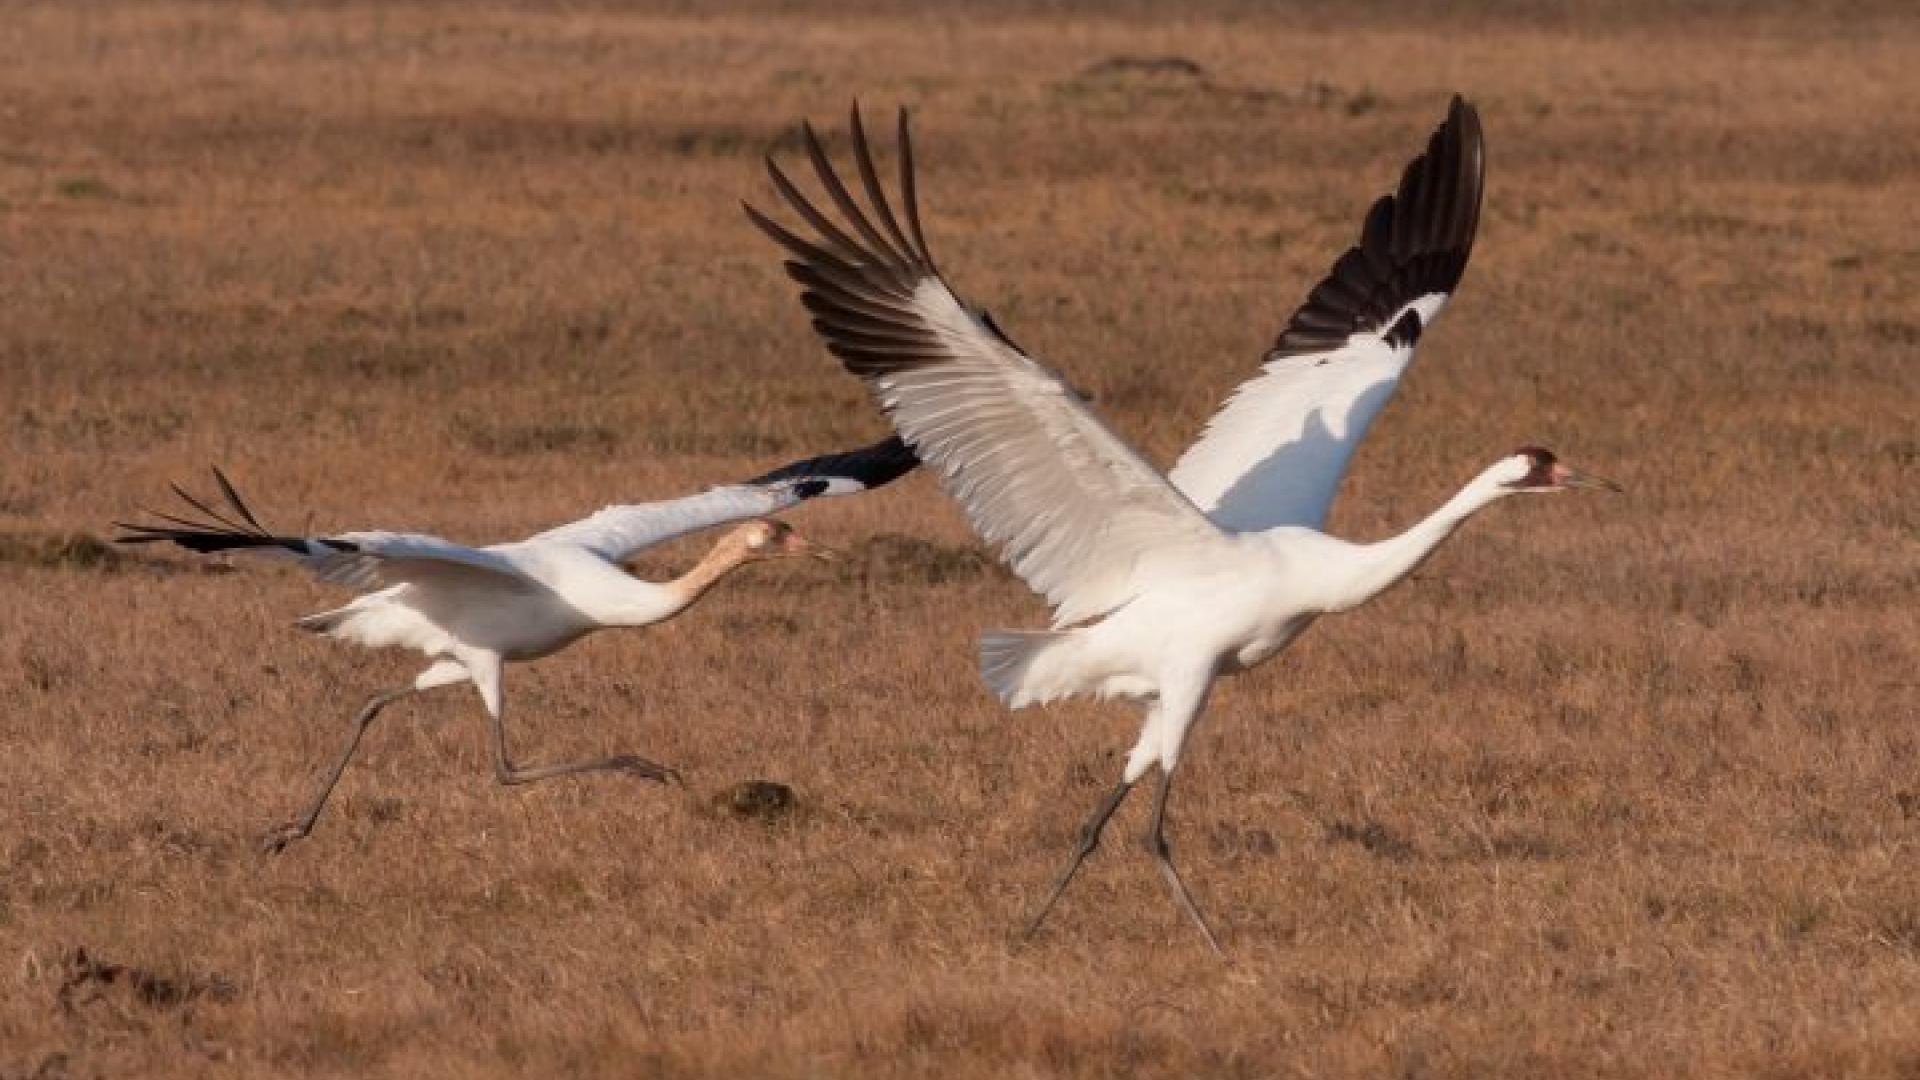 Wooping crane pair taking flight